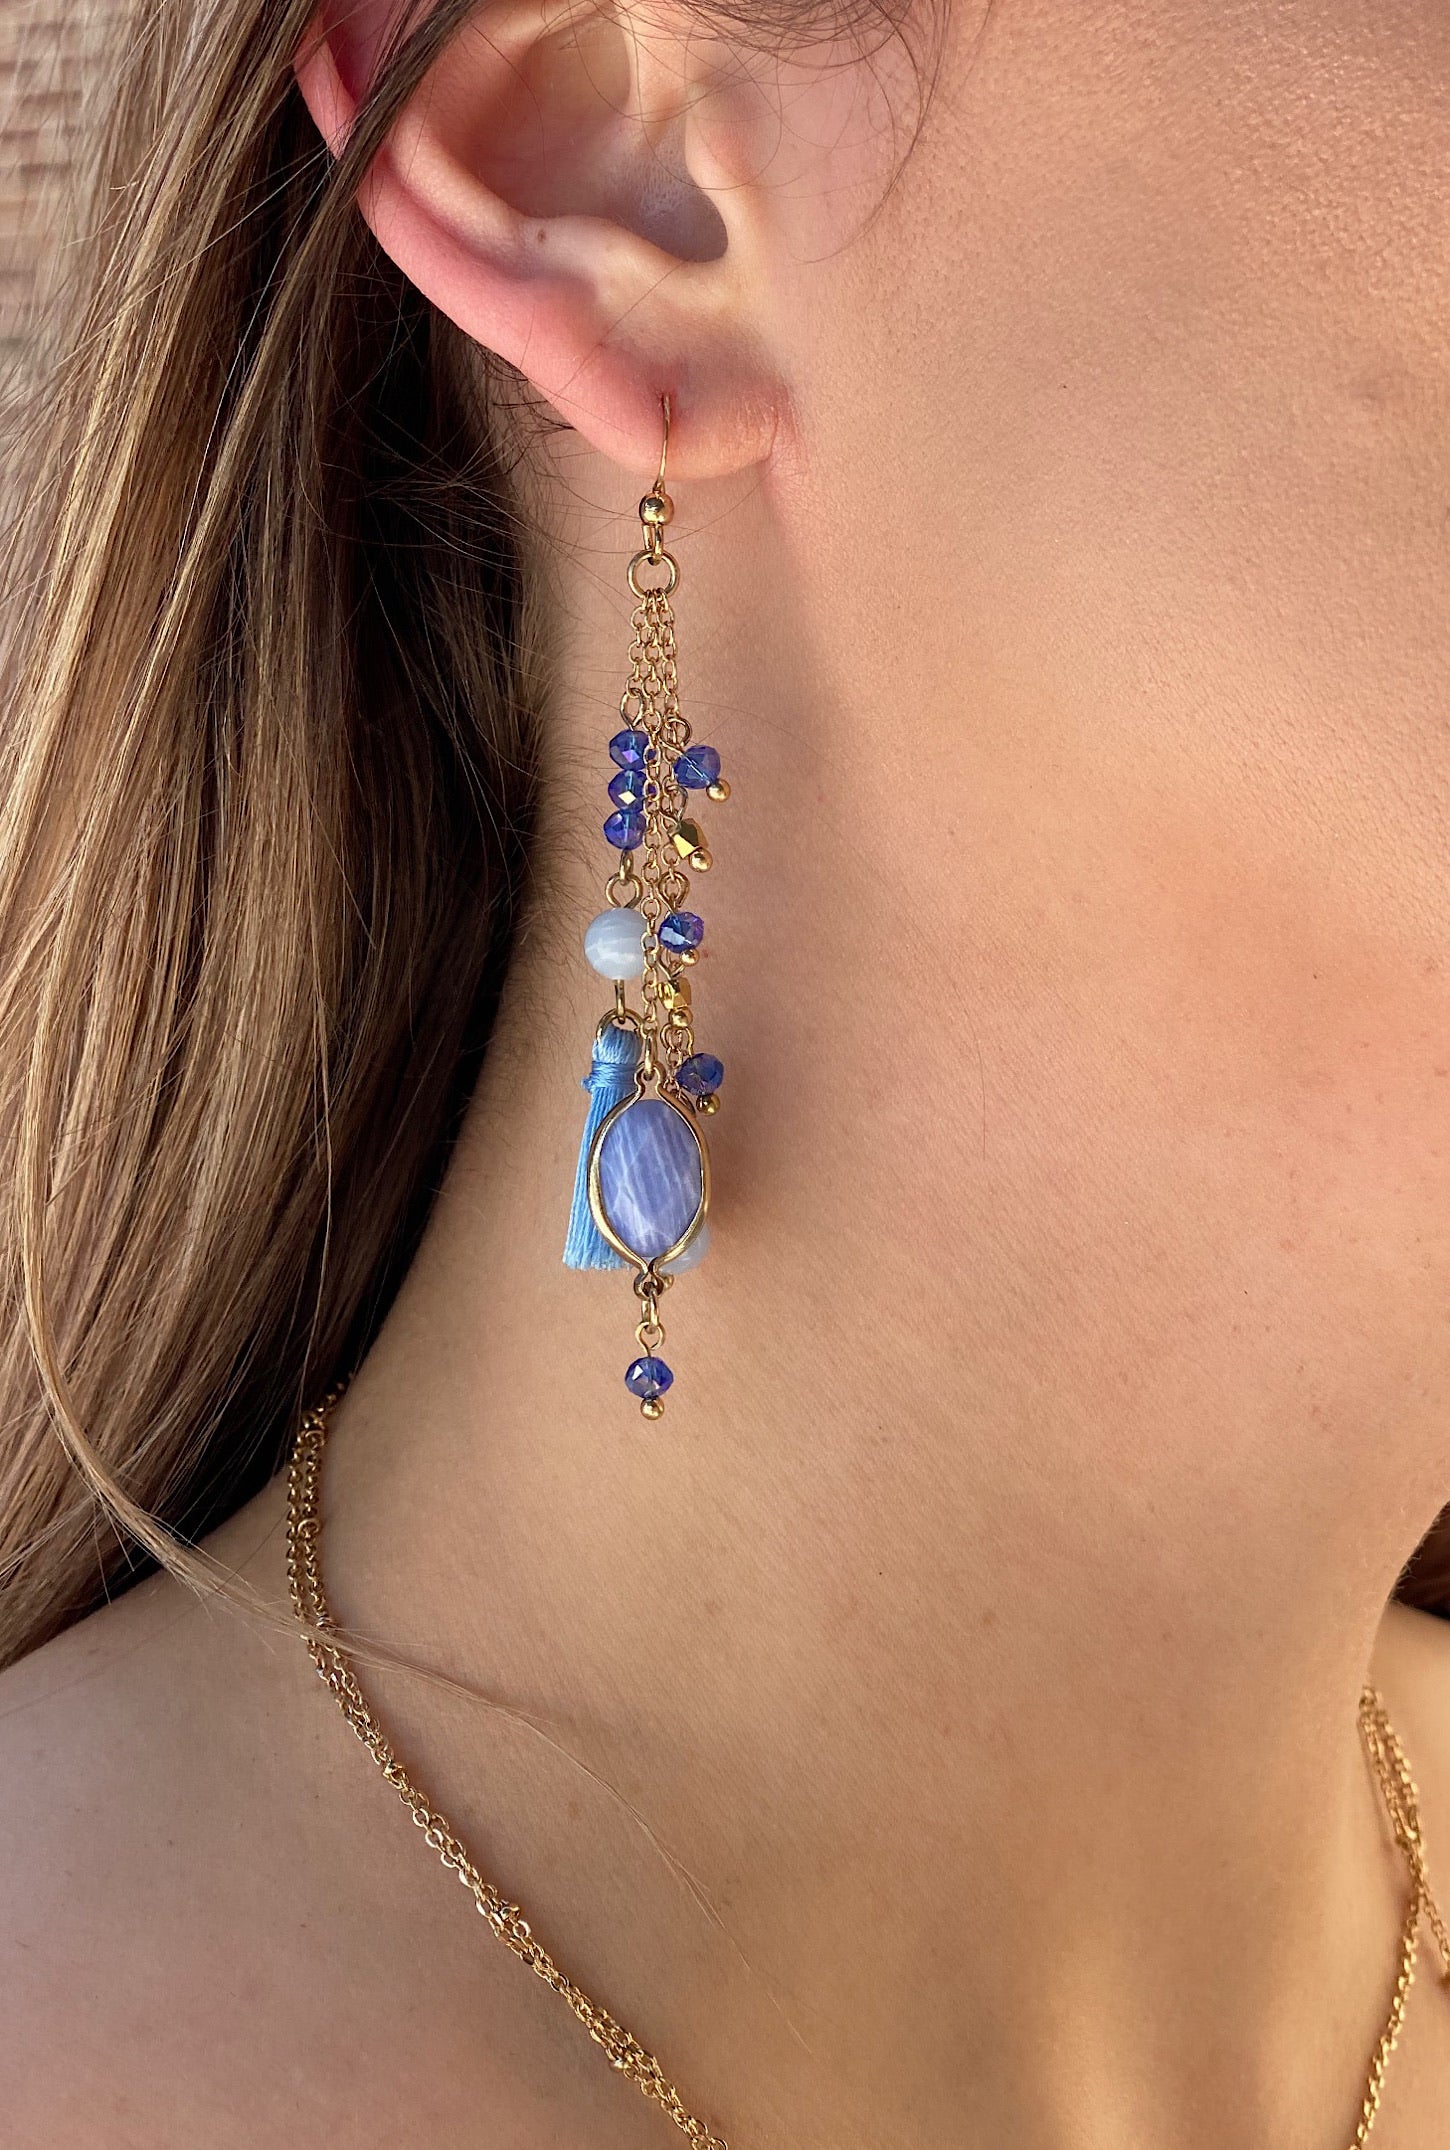 Blue Waterfall Tassel Earring - Bellamie Boutique